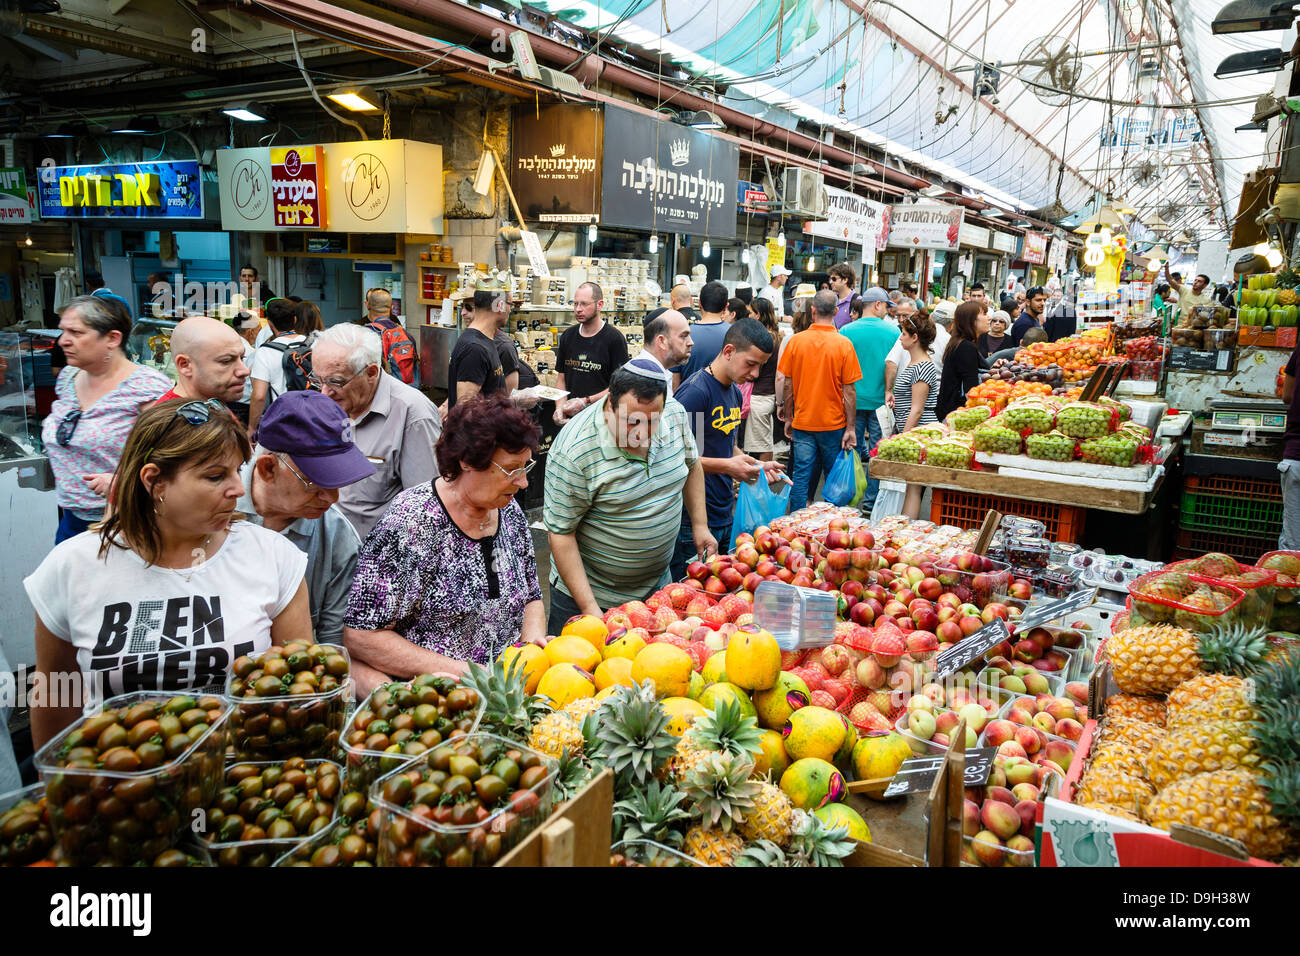 Fruits and vegetables stalls at Mahane Yehuda market, Jerusalem, Israel. Stock Photo